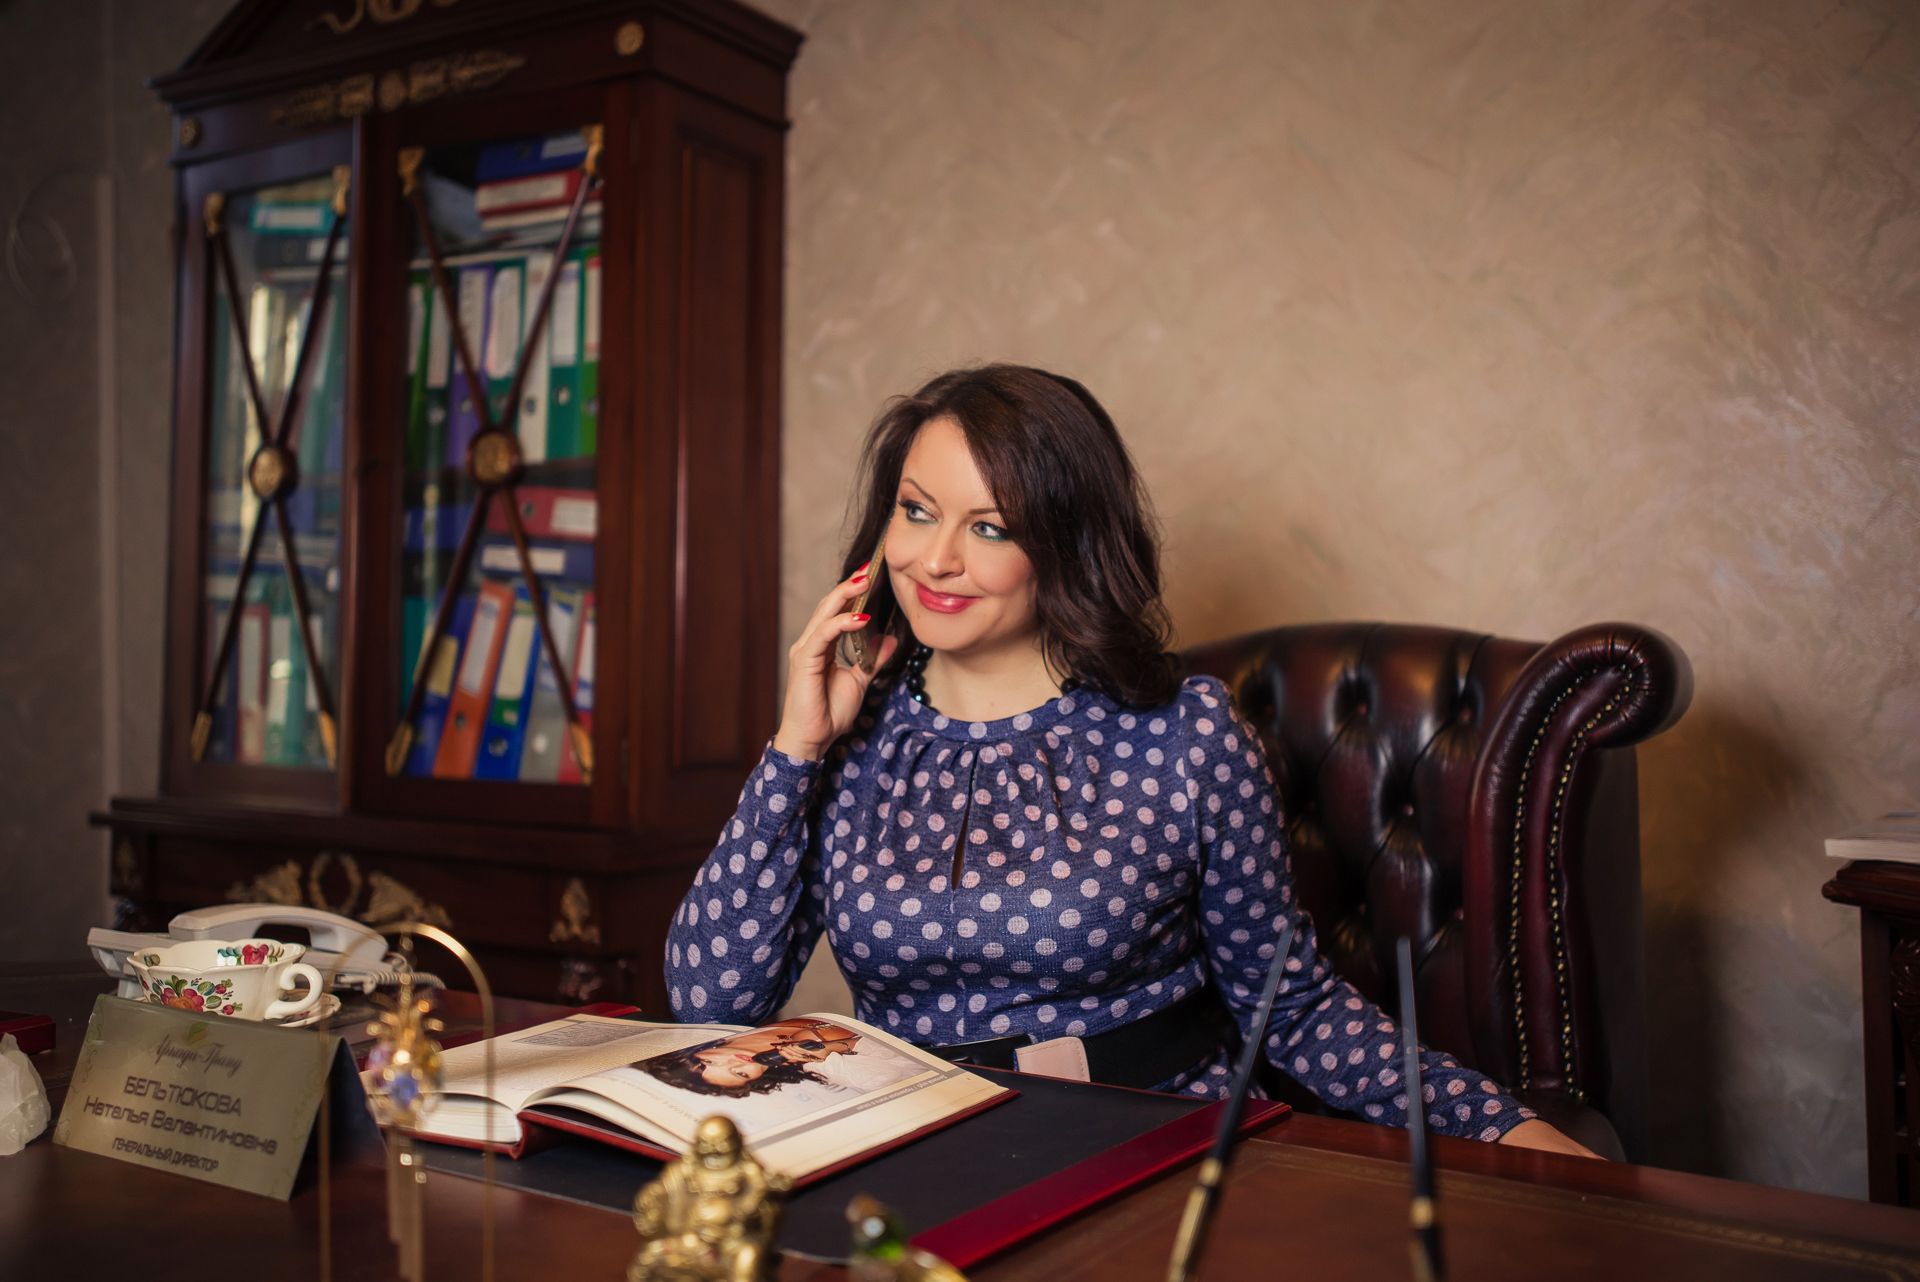 Наталья Бельтюкова - генеральный директор "Аркада-Гранд" - юрист, финансист, экономист, аудитор с 25 летним стажем работы в Украине